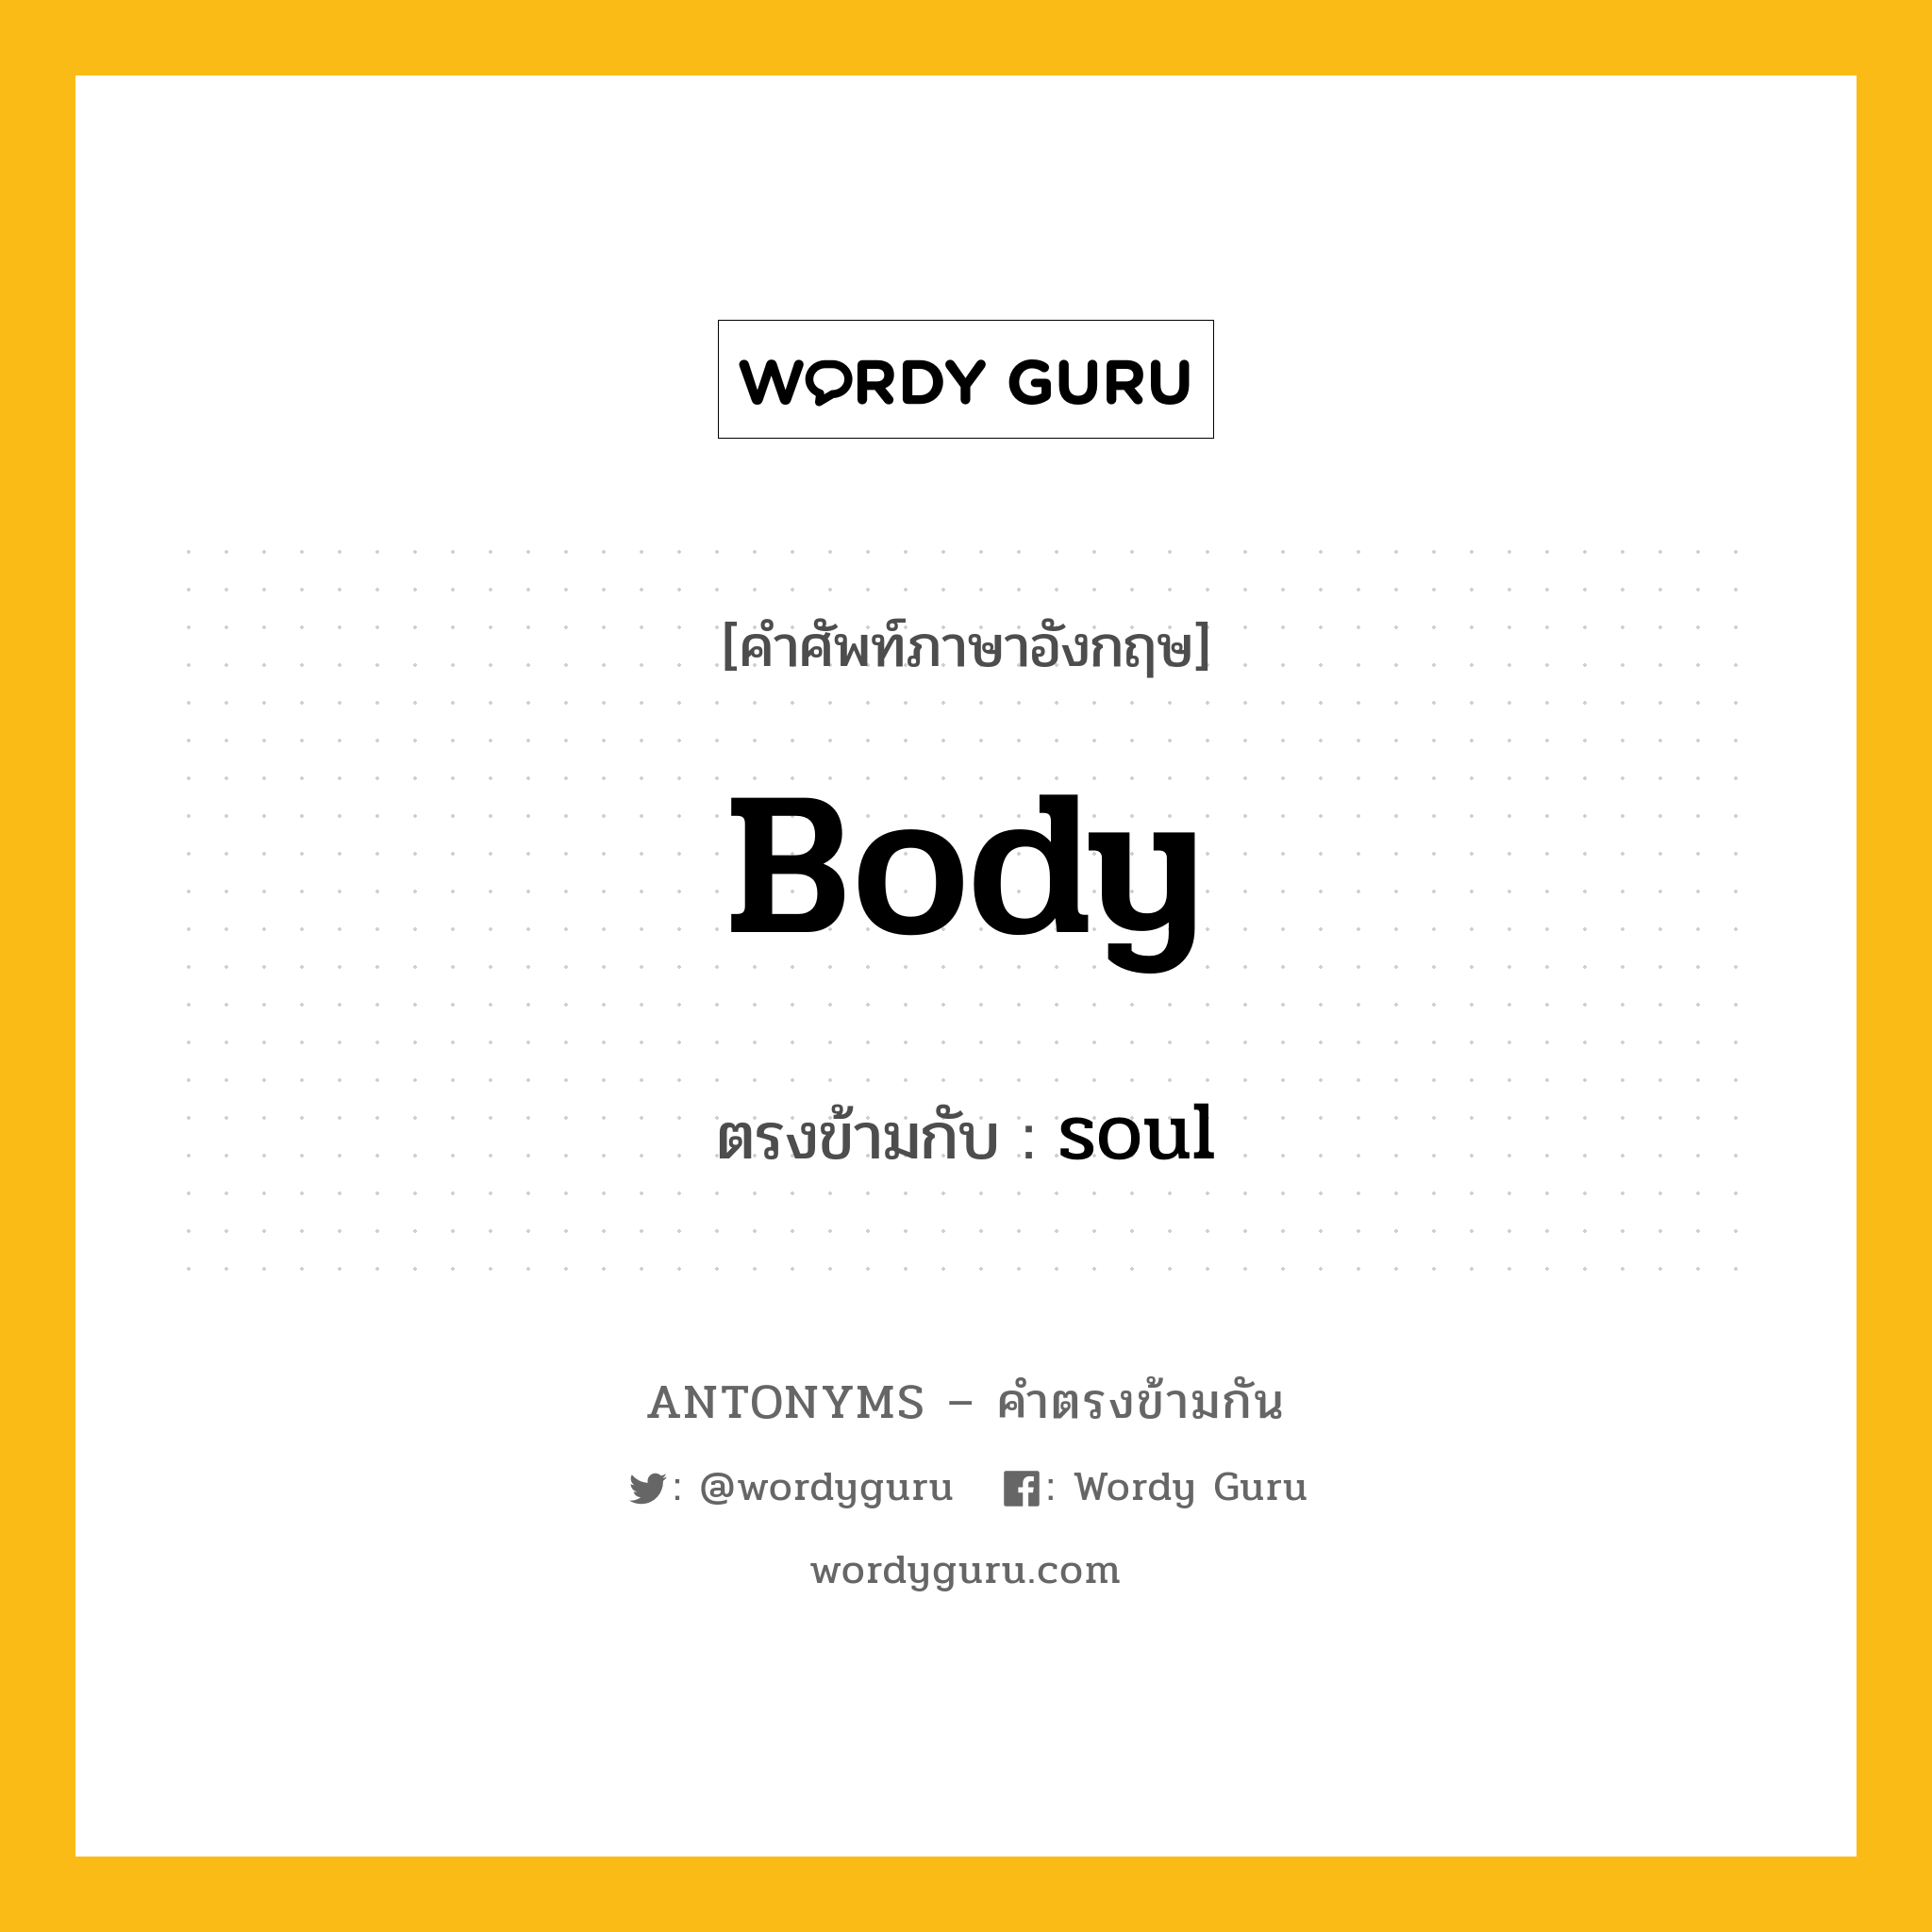 body เป็นคำตรงข้ามกับคำไหนบ้าง?, คำศัพท์ภาษาอังกฤษ body ตรงข้ามกับ soul หมวด soul